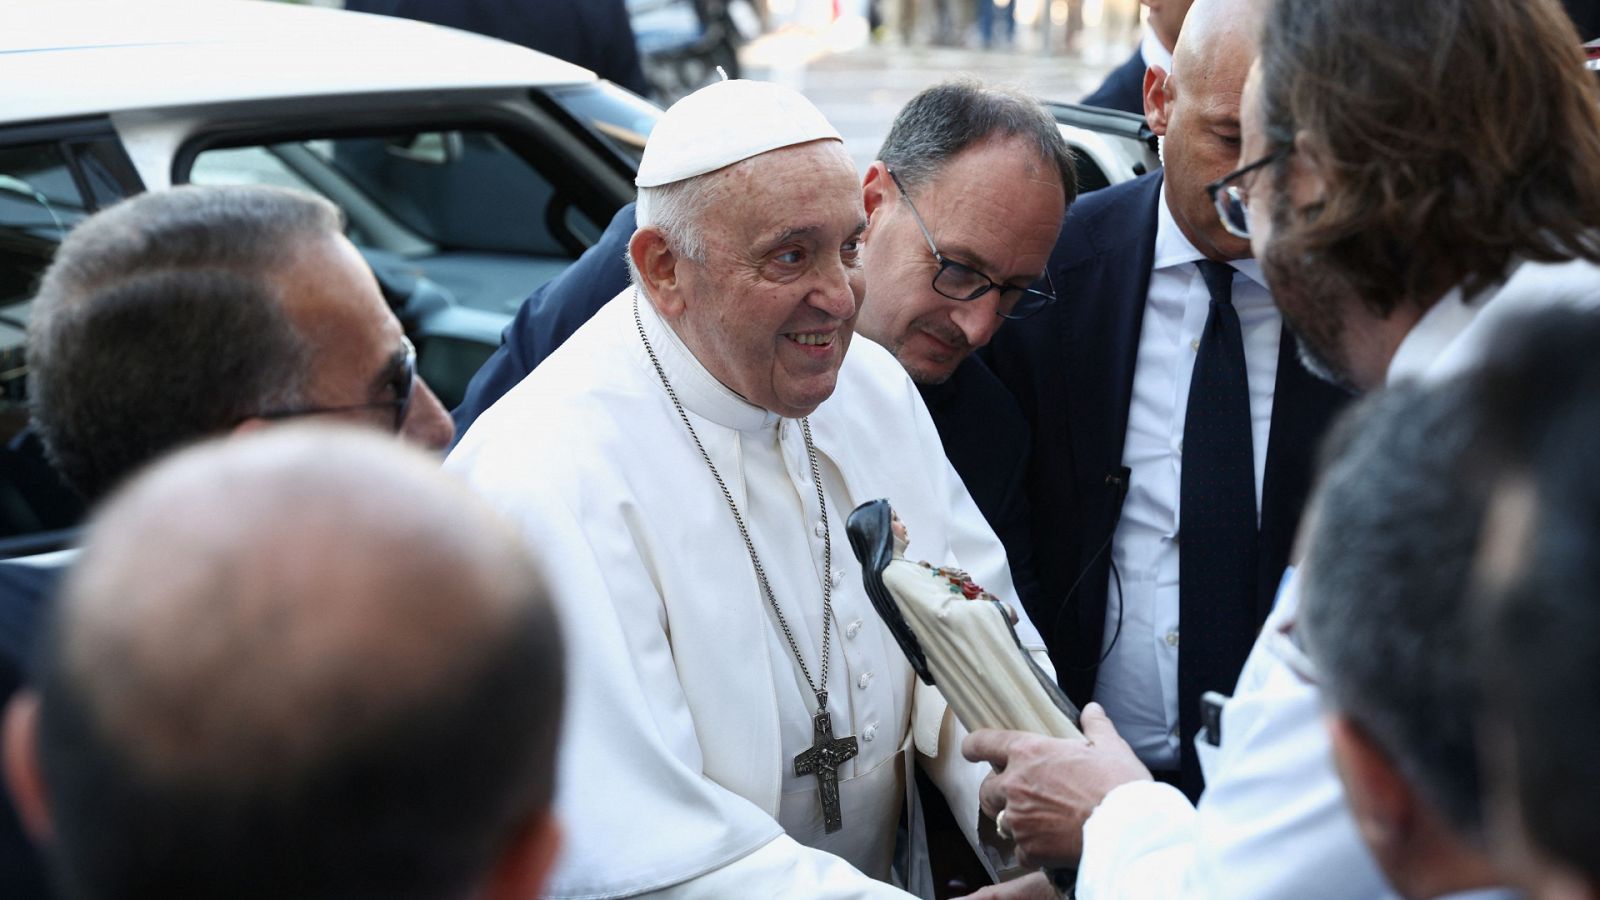 El papa Francisco recibe el alta tras su operación: "Sigo vivo"